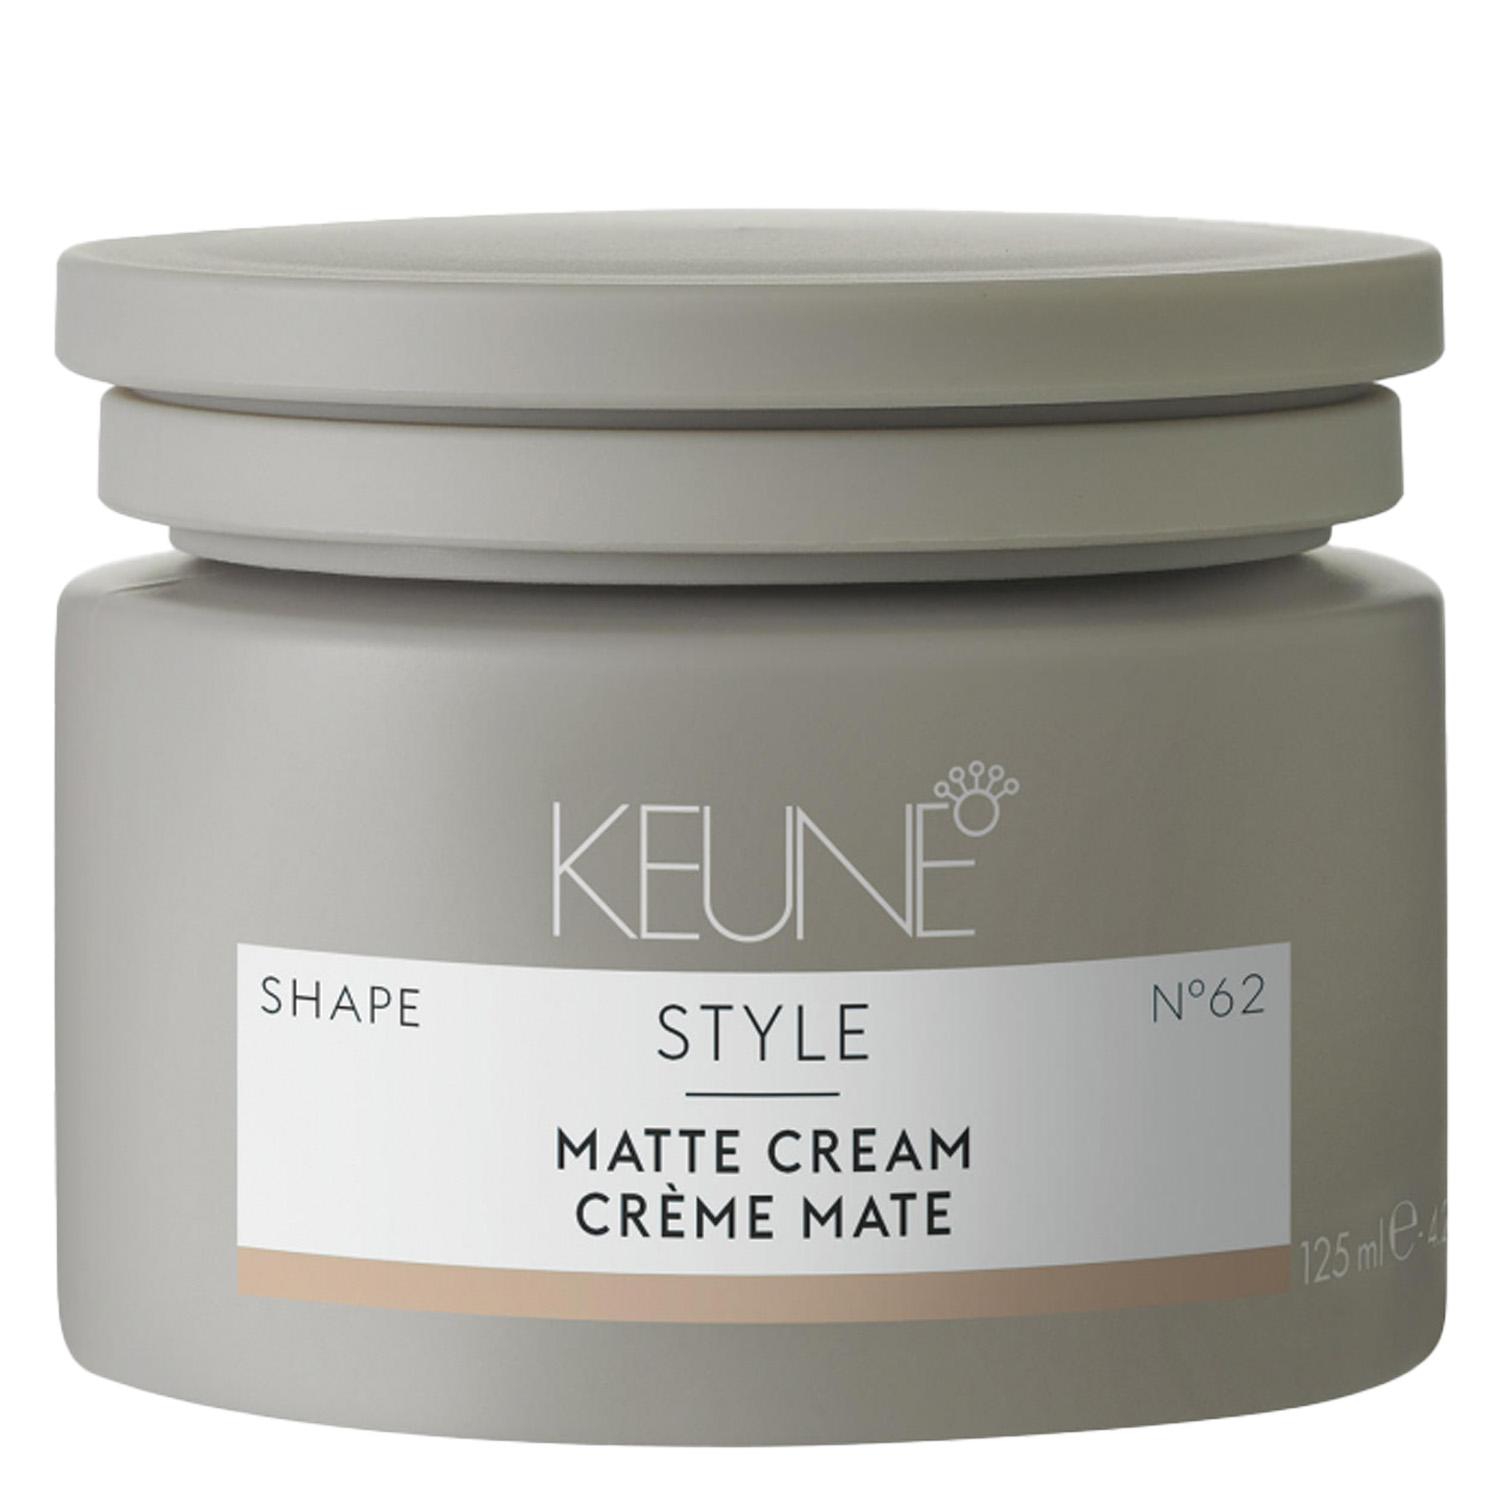 Keune Style - Matte Cream